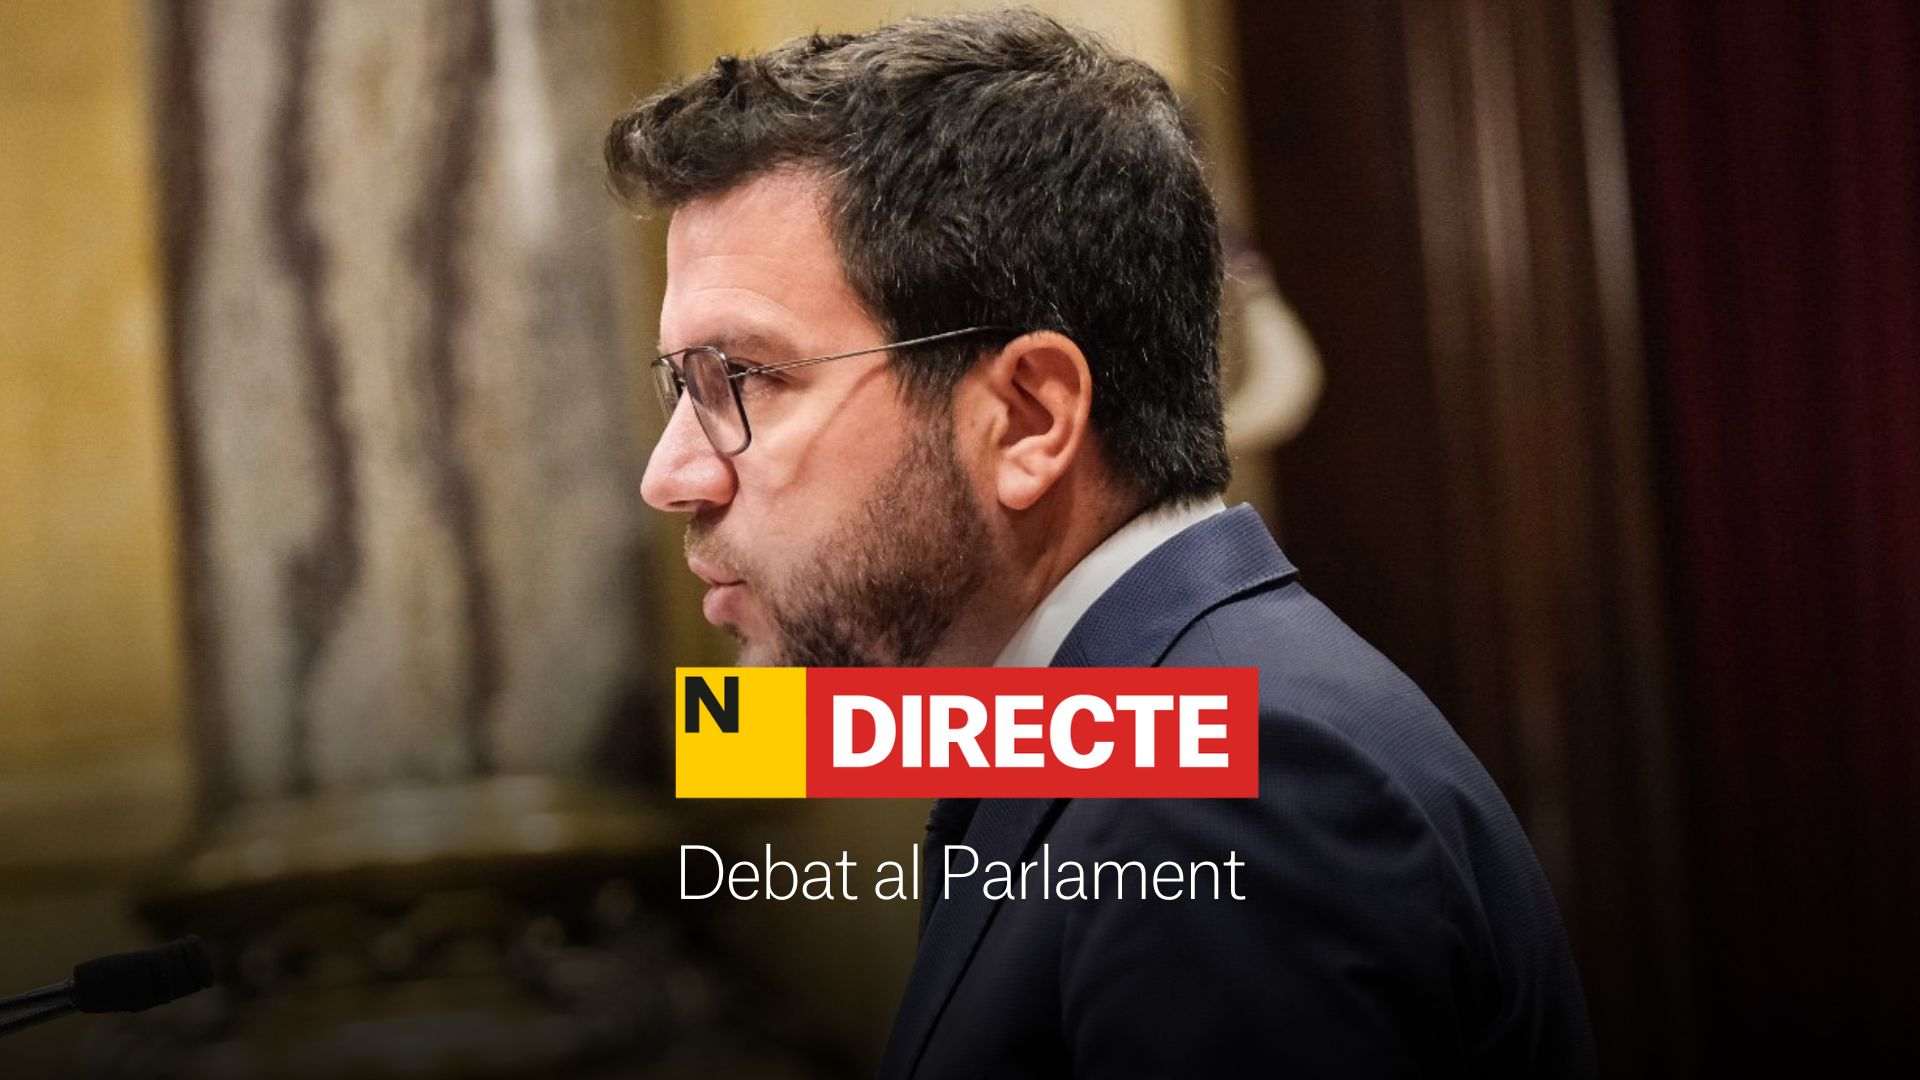 Pere Aragonès, DIRECTE | Reaccions i última hora al seu discurs al Parlament de Catalunya